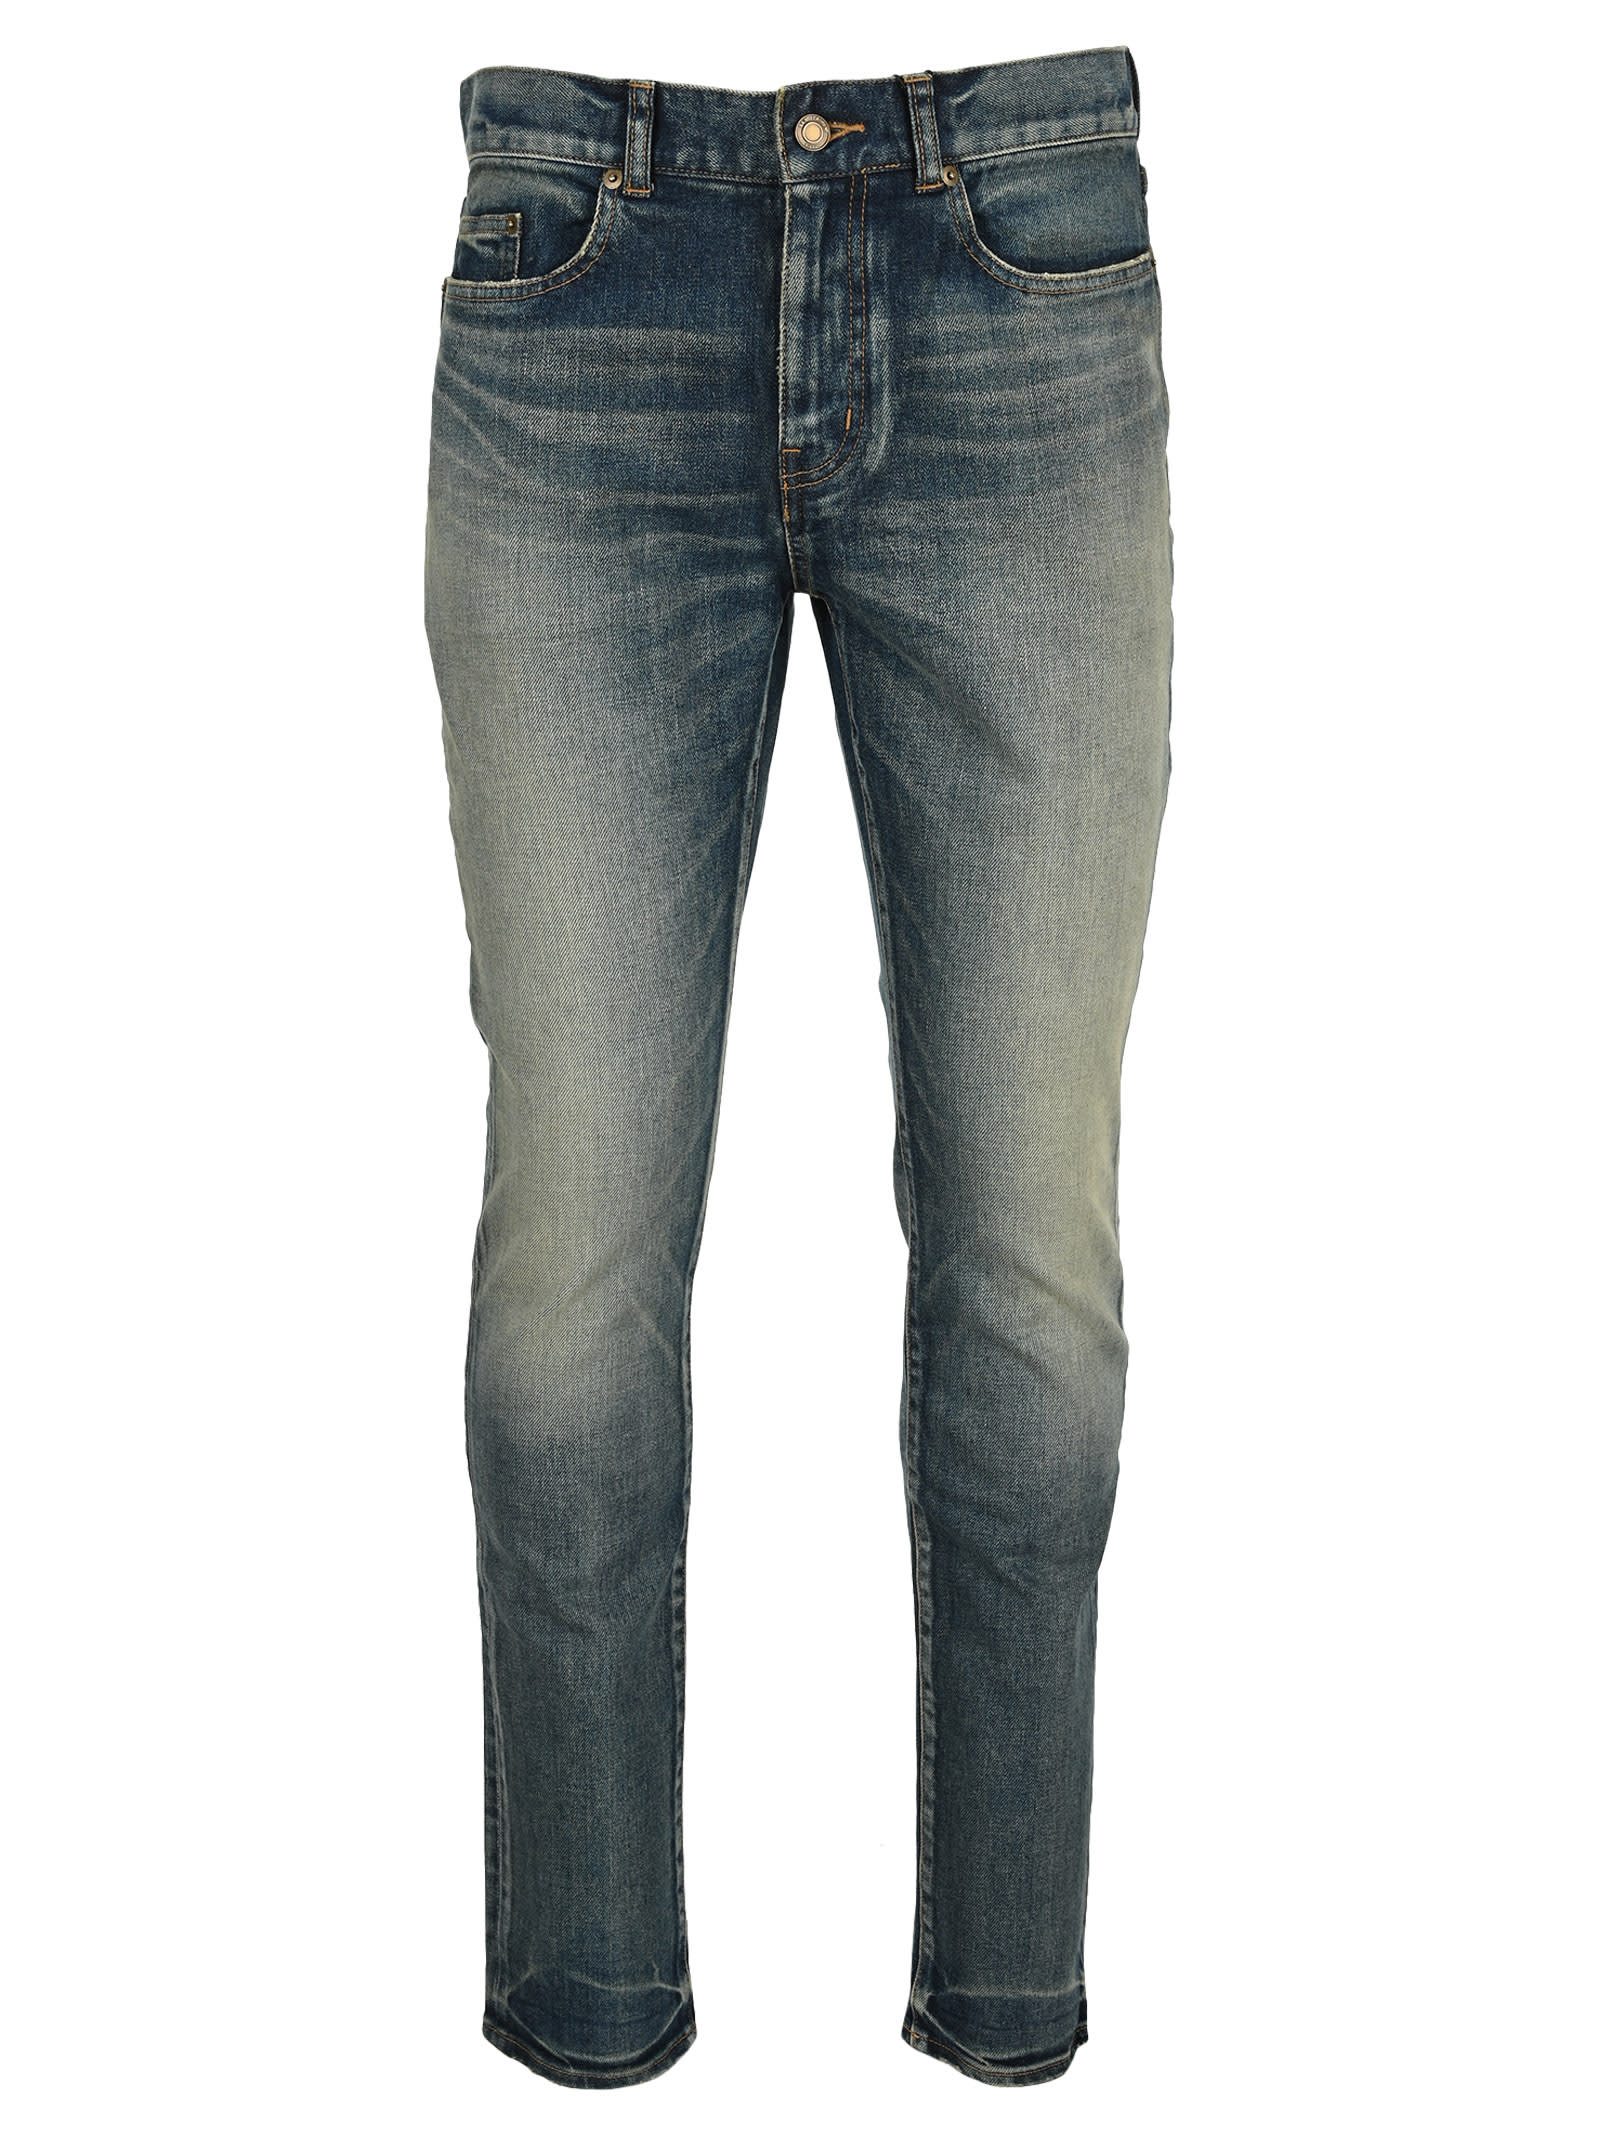 Saint Laurent Medium Waist Skinny Jeans